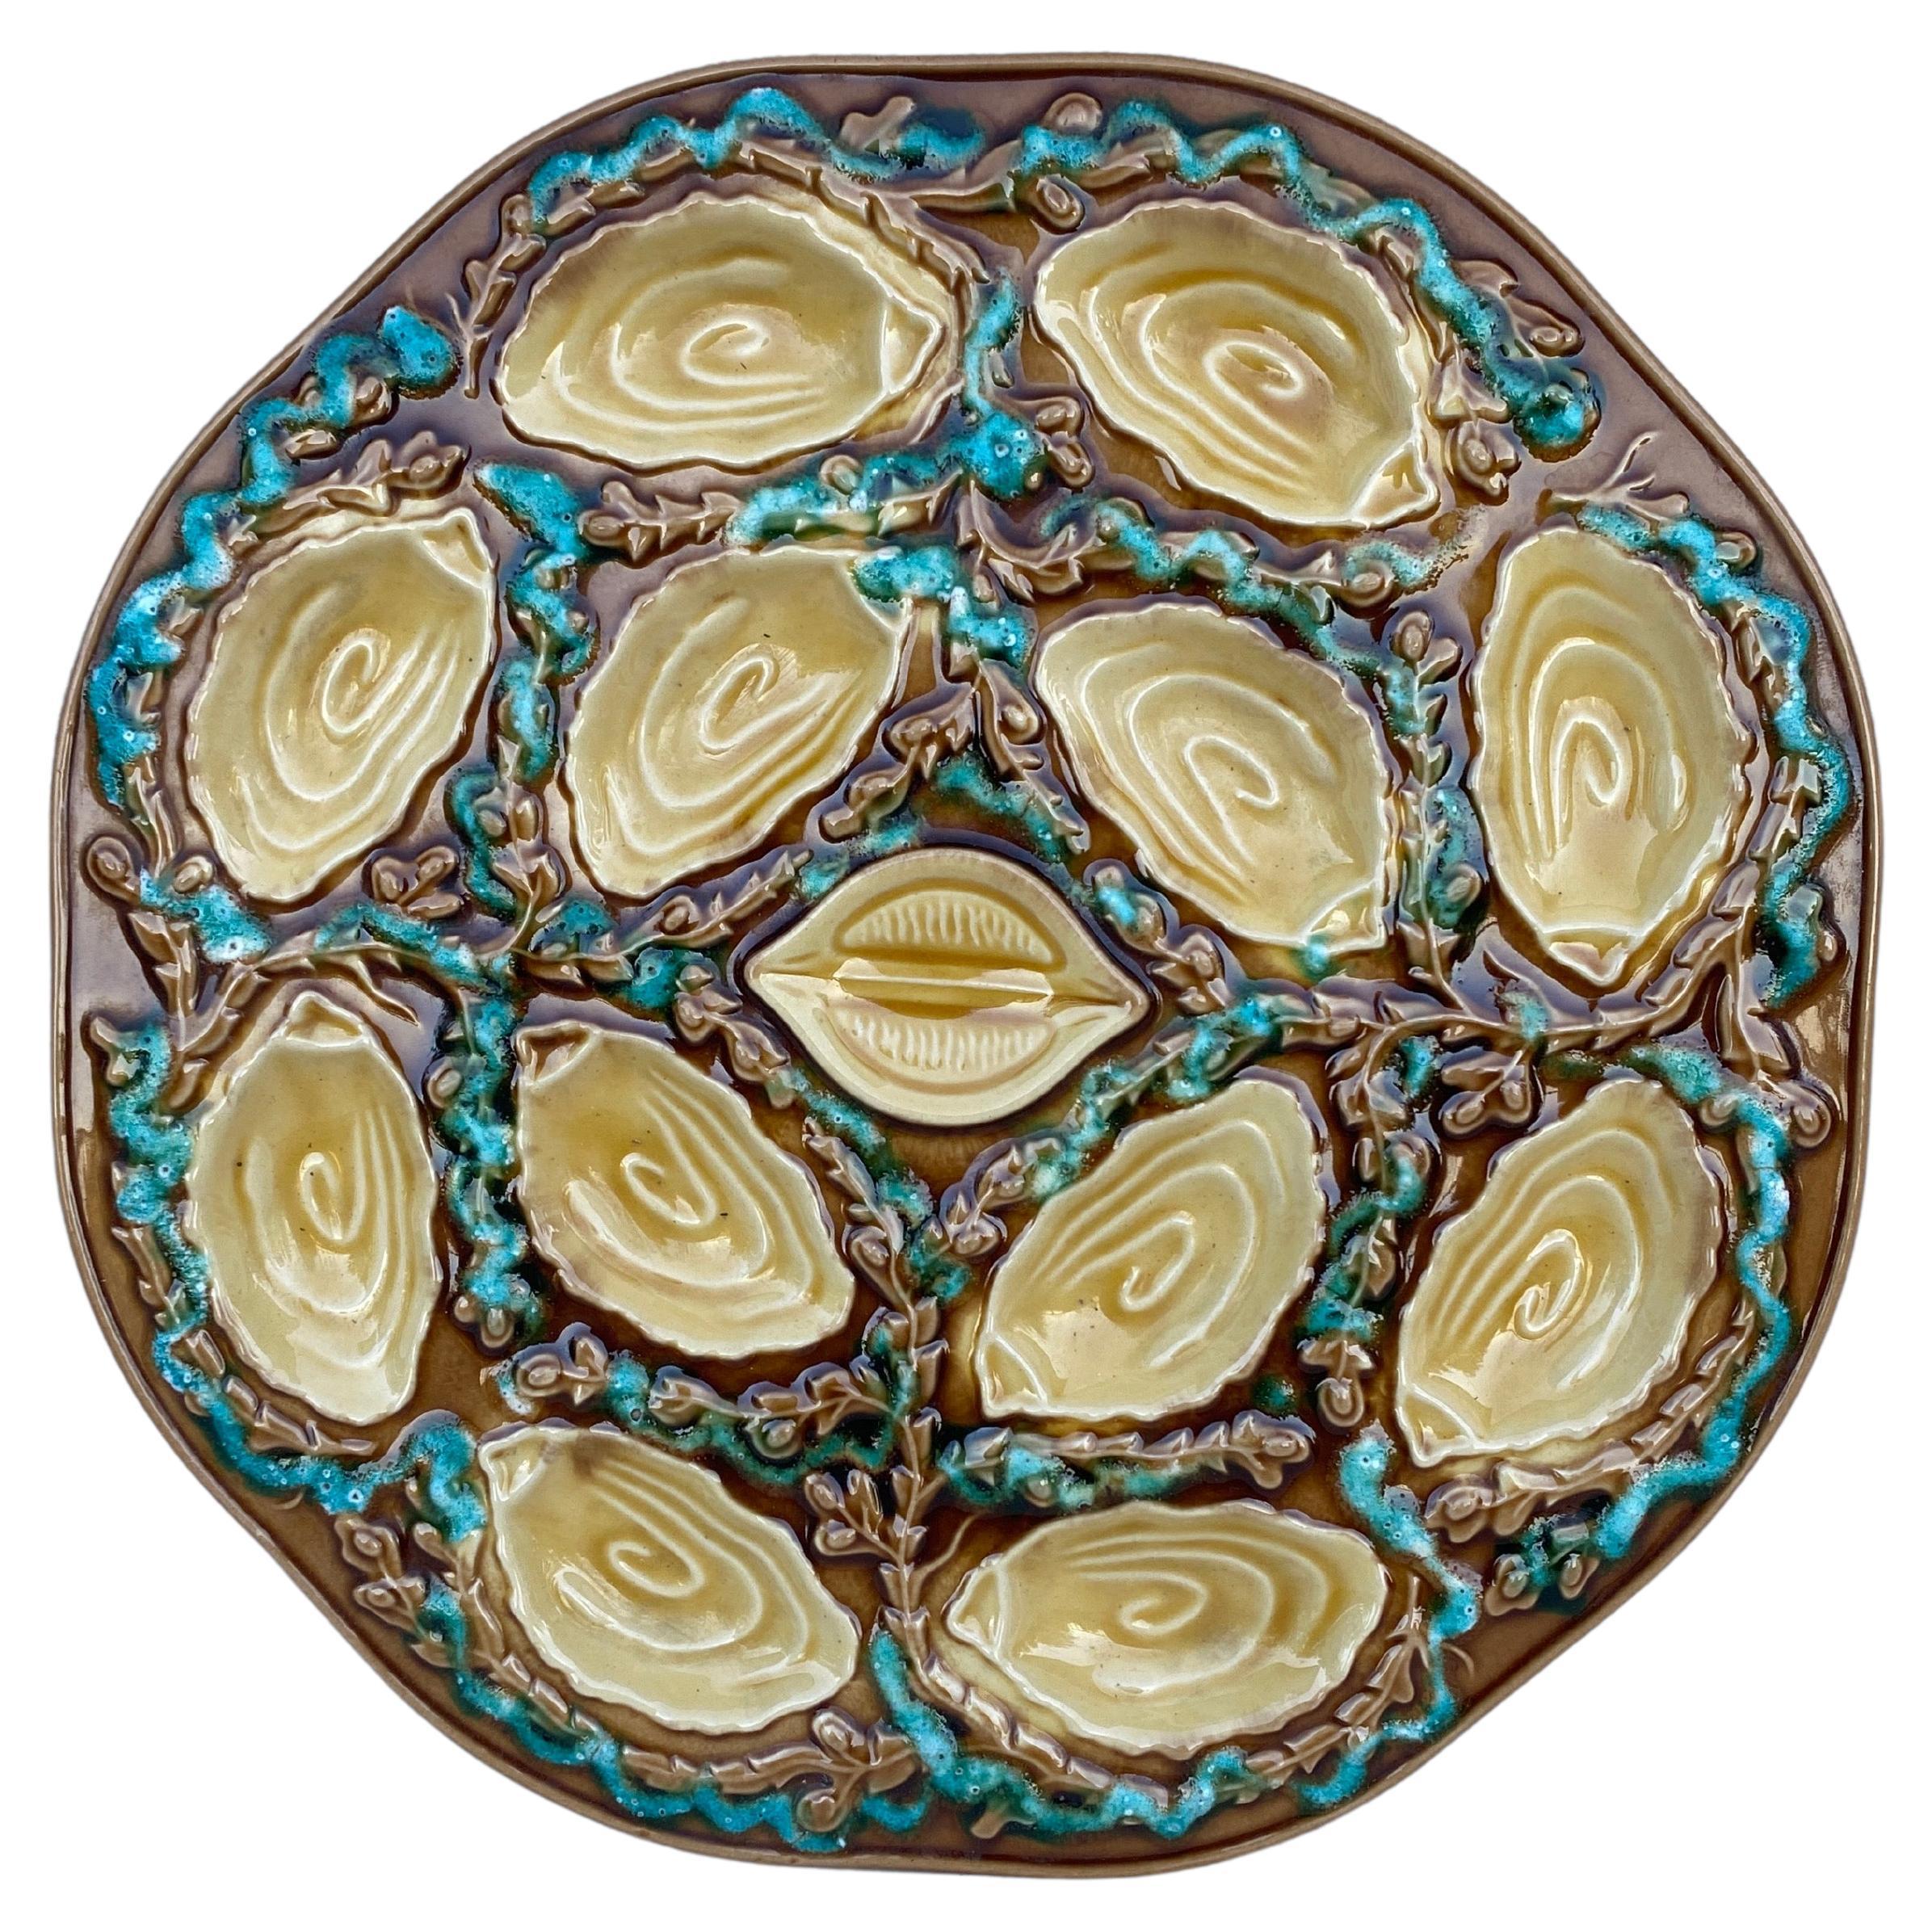 Grand plat à huîtres en majolique de Vallauris, vers 1950.
14,5 pouces de diamètre.